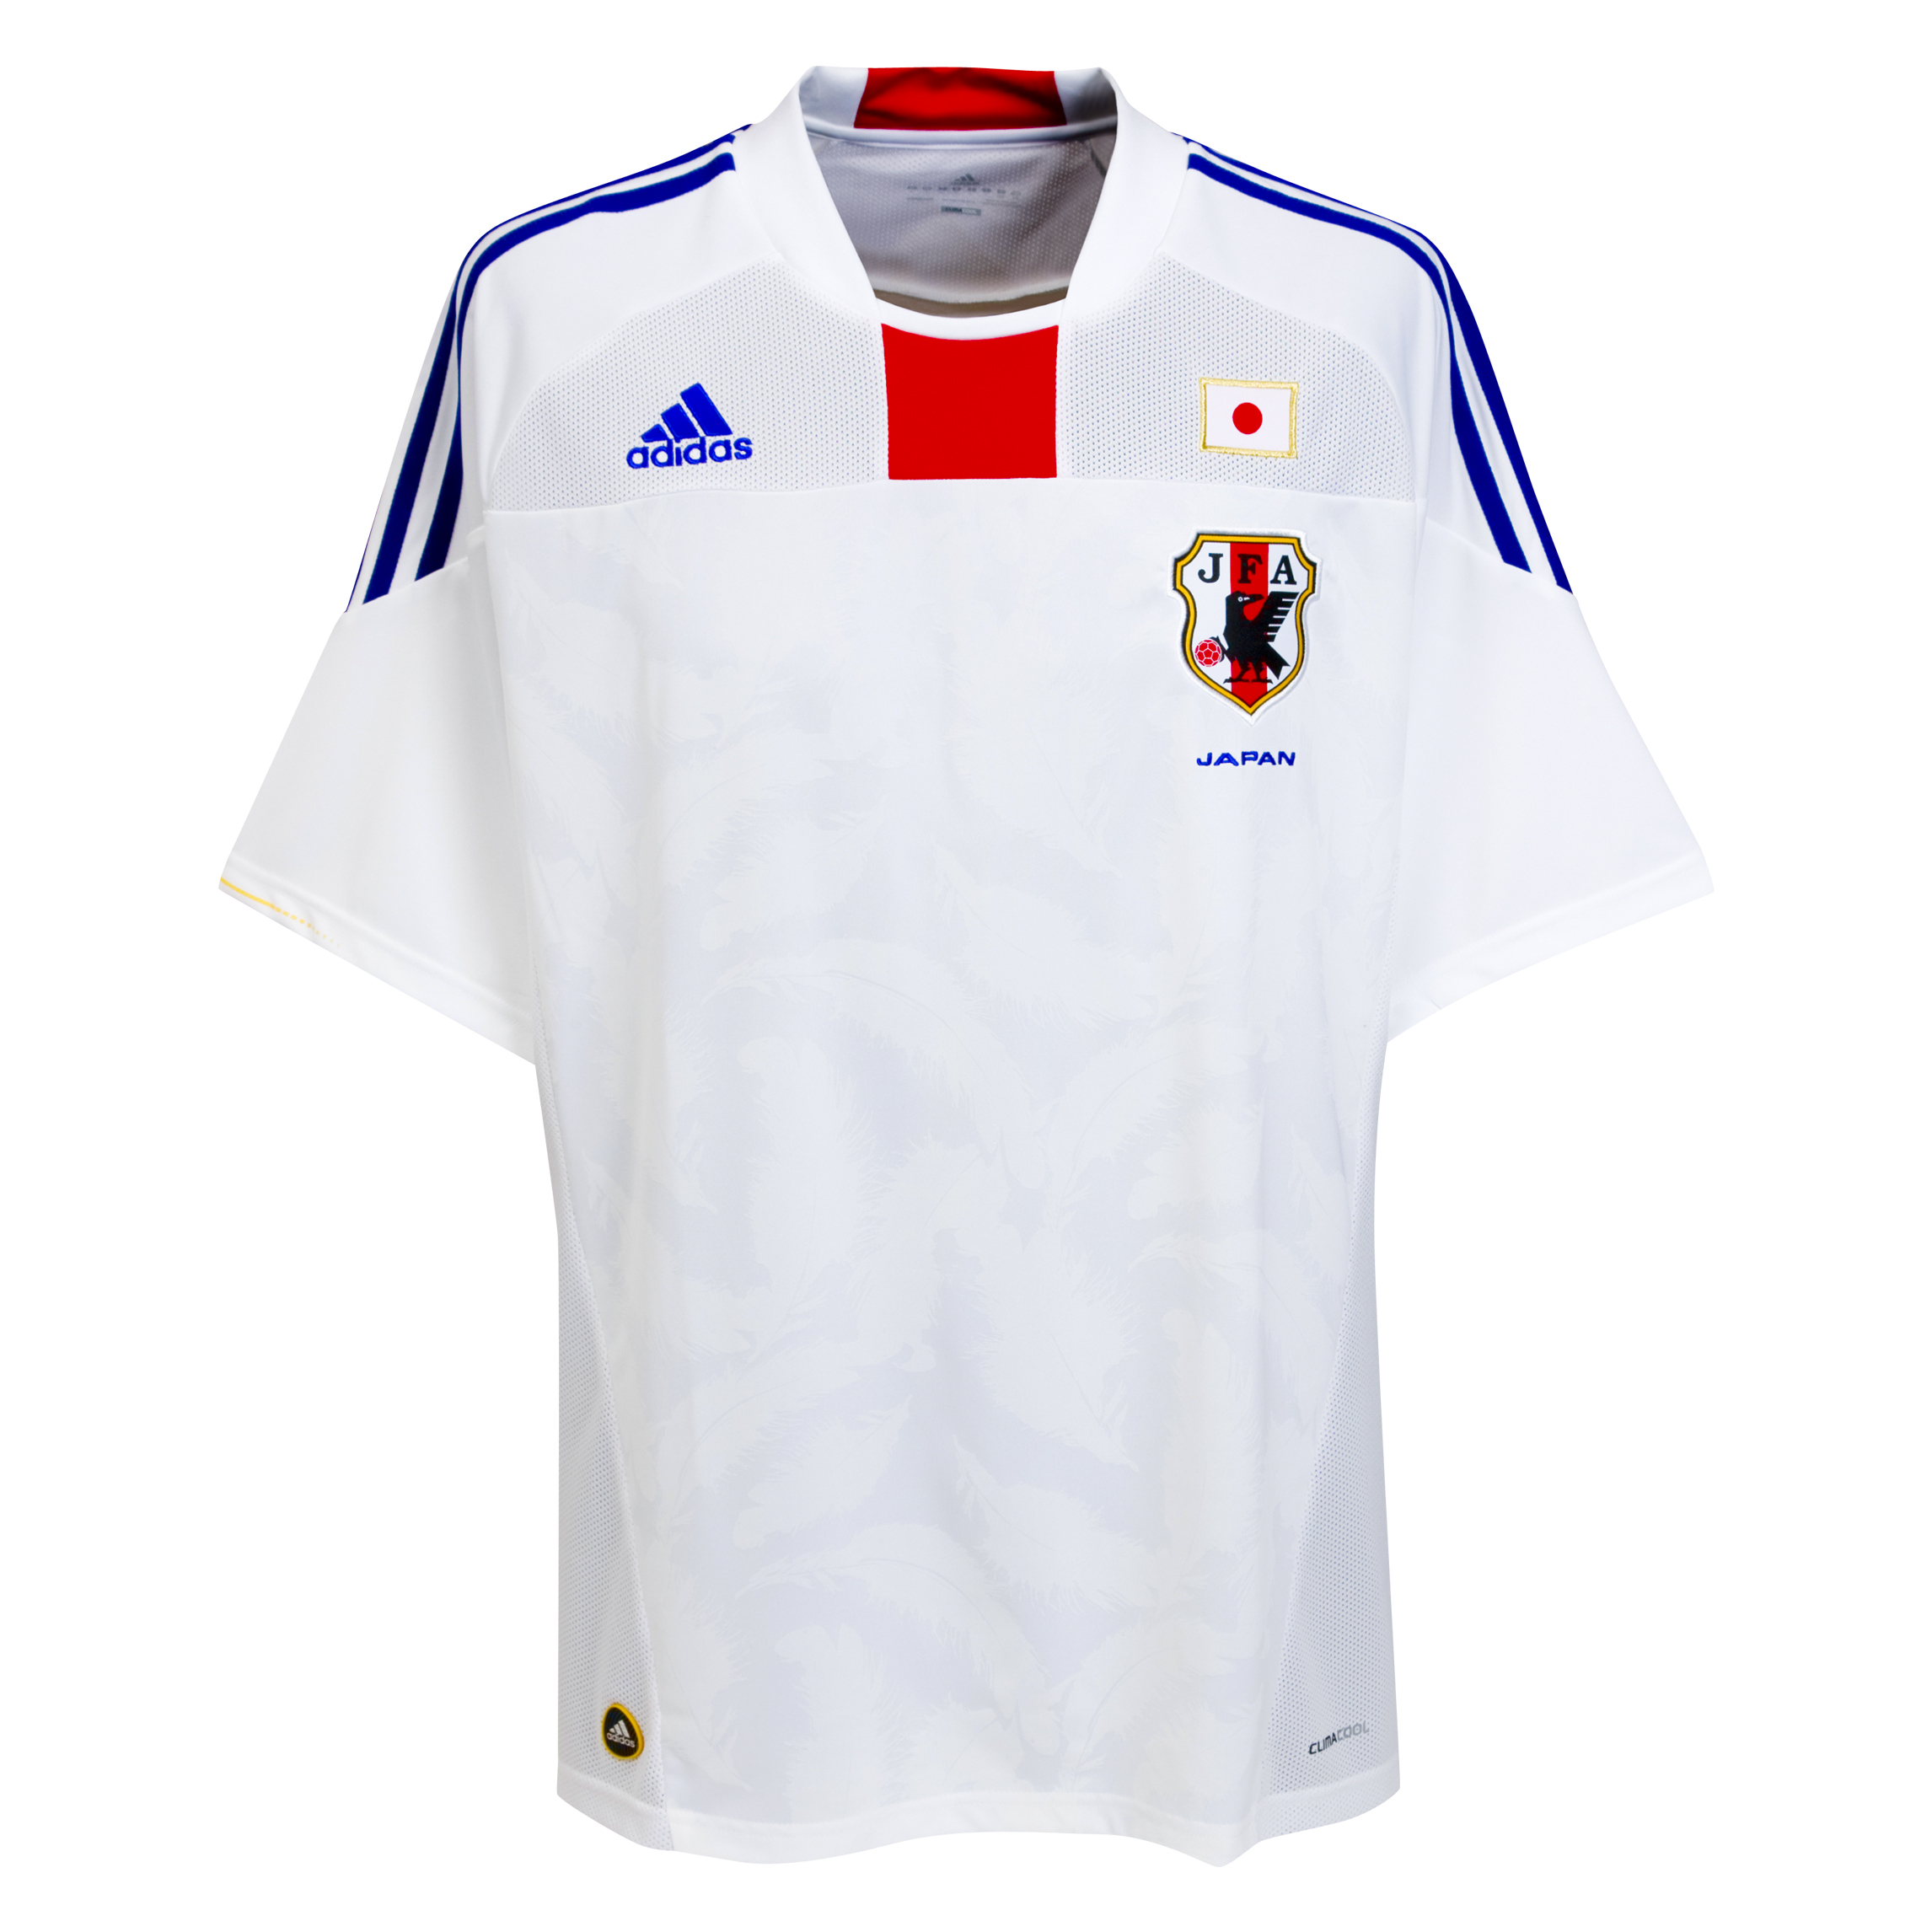 الملابس الخاصة بالمنتخبات في كأس العالم (جنوب أفريقيا 2010) Kb-66941